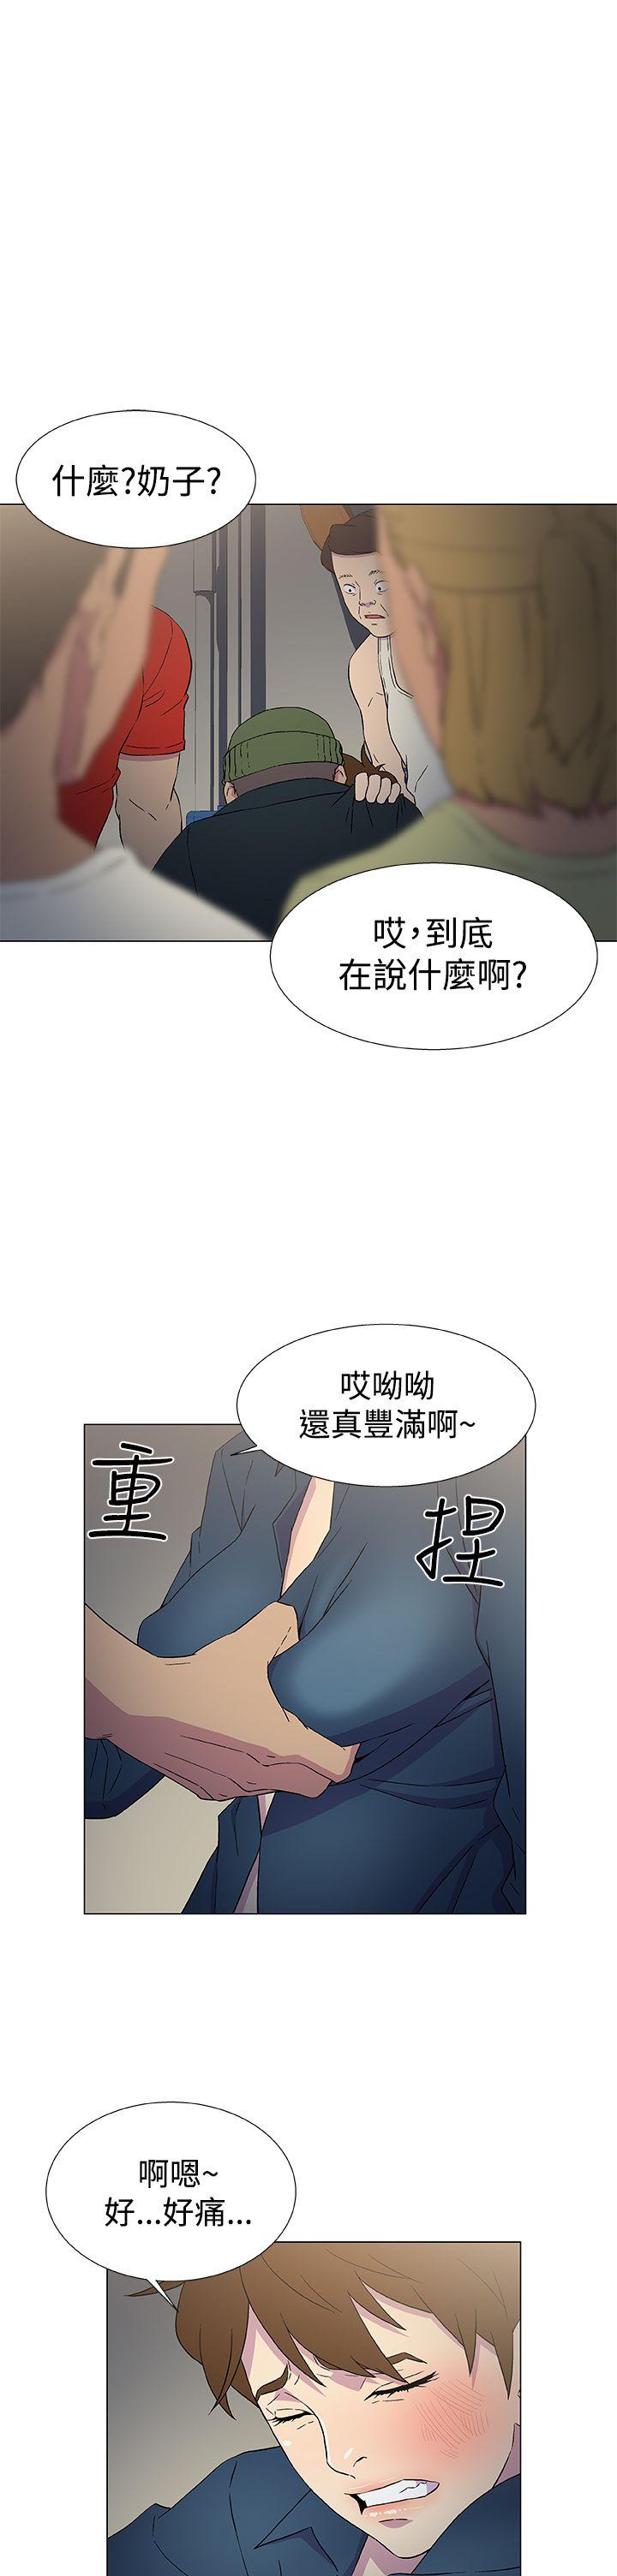 韩国污漫画 黑暗之海 第9话 9